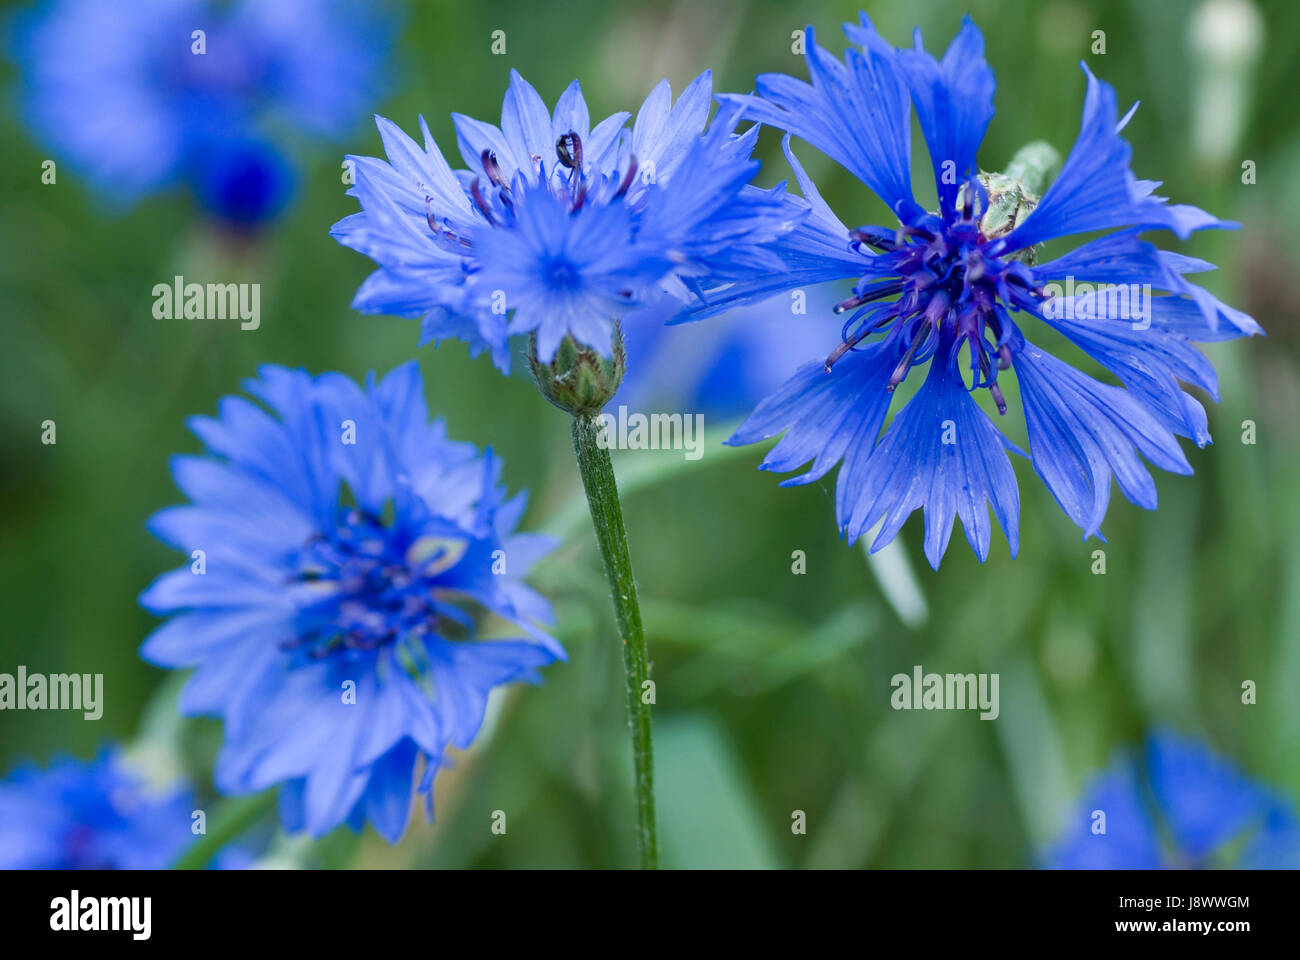 blue, flower, plant, field, petal, cereal, bluebottle, cornflower, grain, blue, Stock Photo